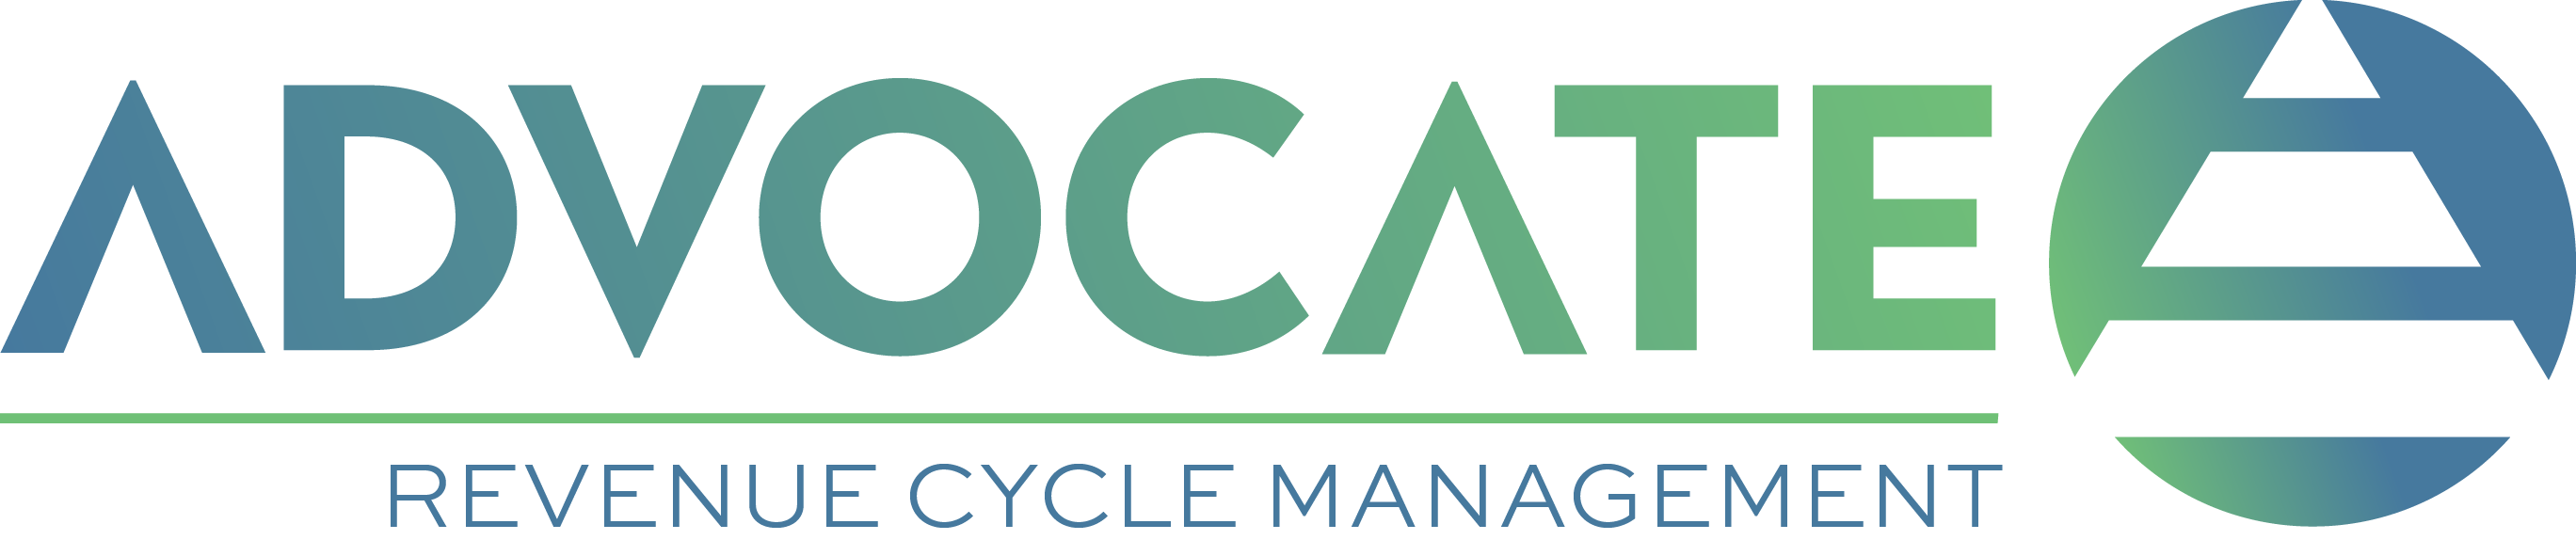 Advocate RCM logo